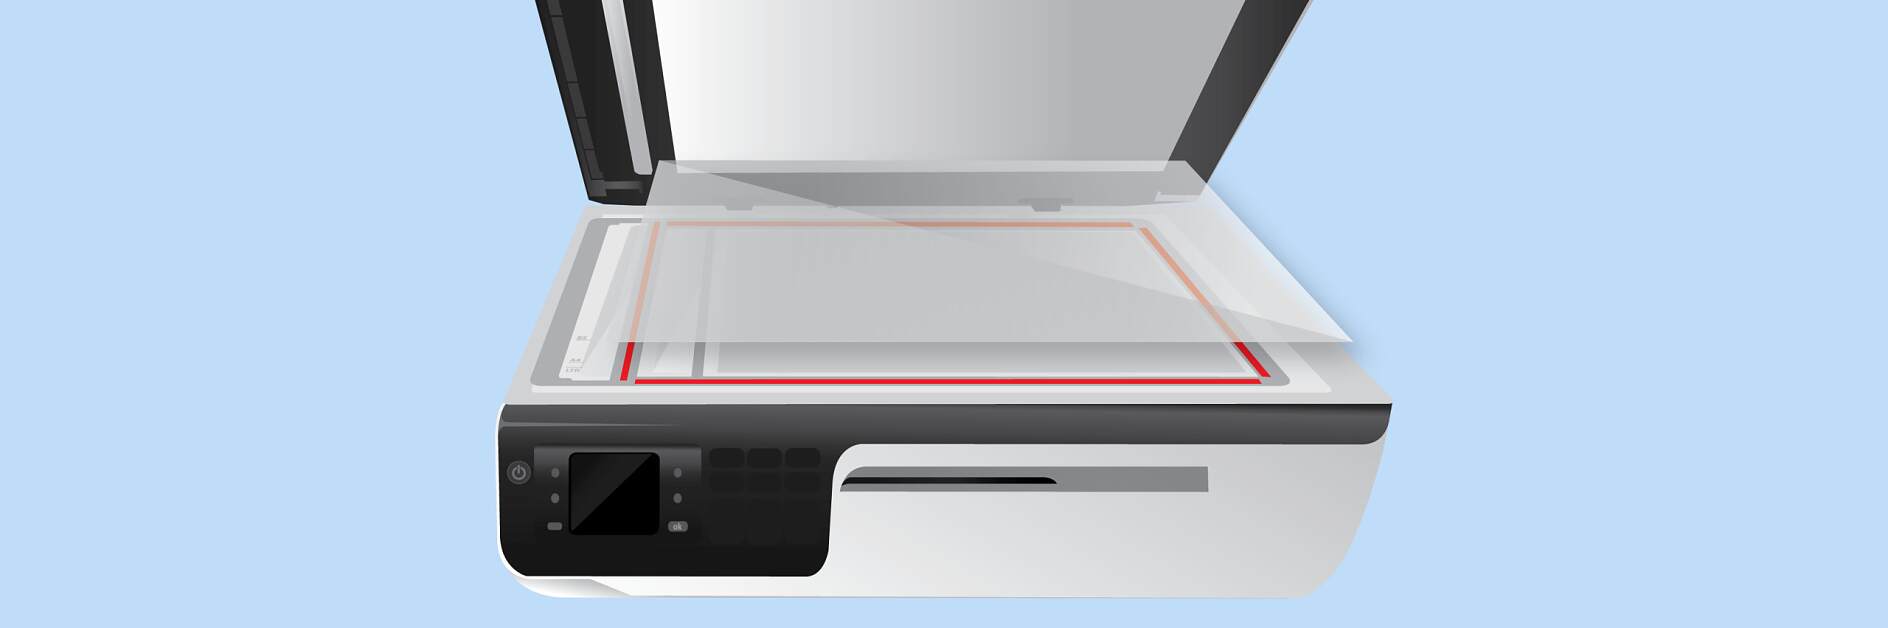 Připevnění skla skeneru